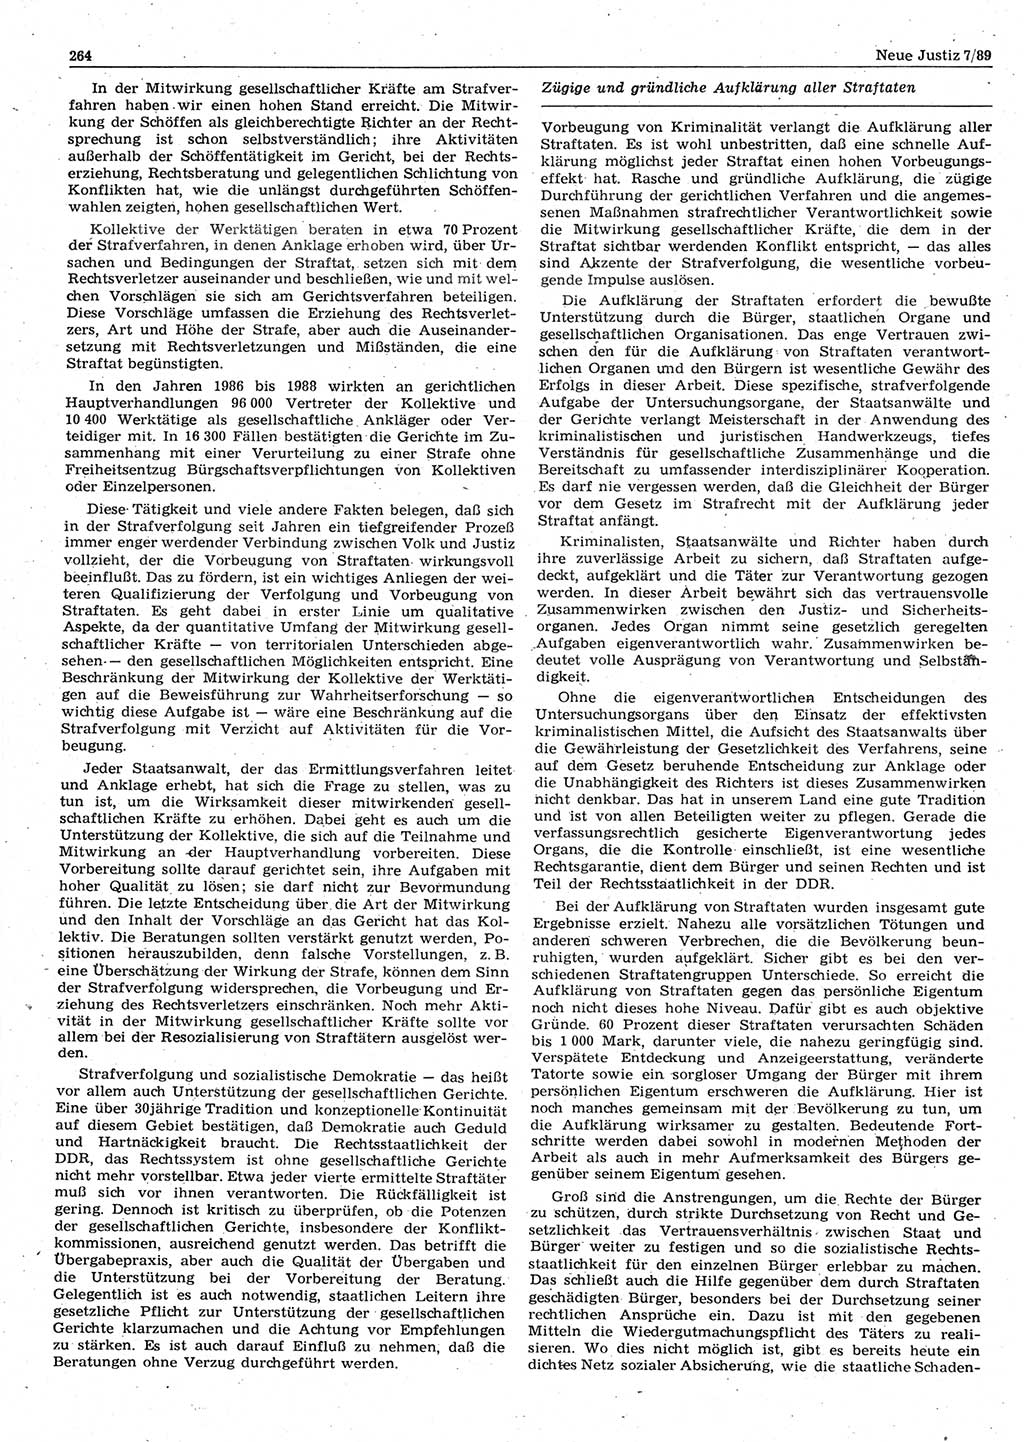 Neue Justiz (NJ), Zeitschrift für sozialistisches Recht und Gesetzlichkeit [Deutsche Demokratische Republik (DDR)], 43. Jahrgang 1989, Seite 264 (NJ DDR 1989, S. 264)